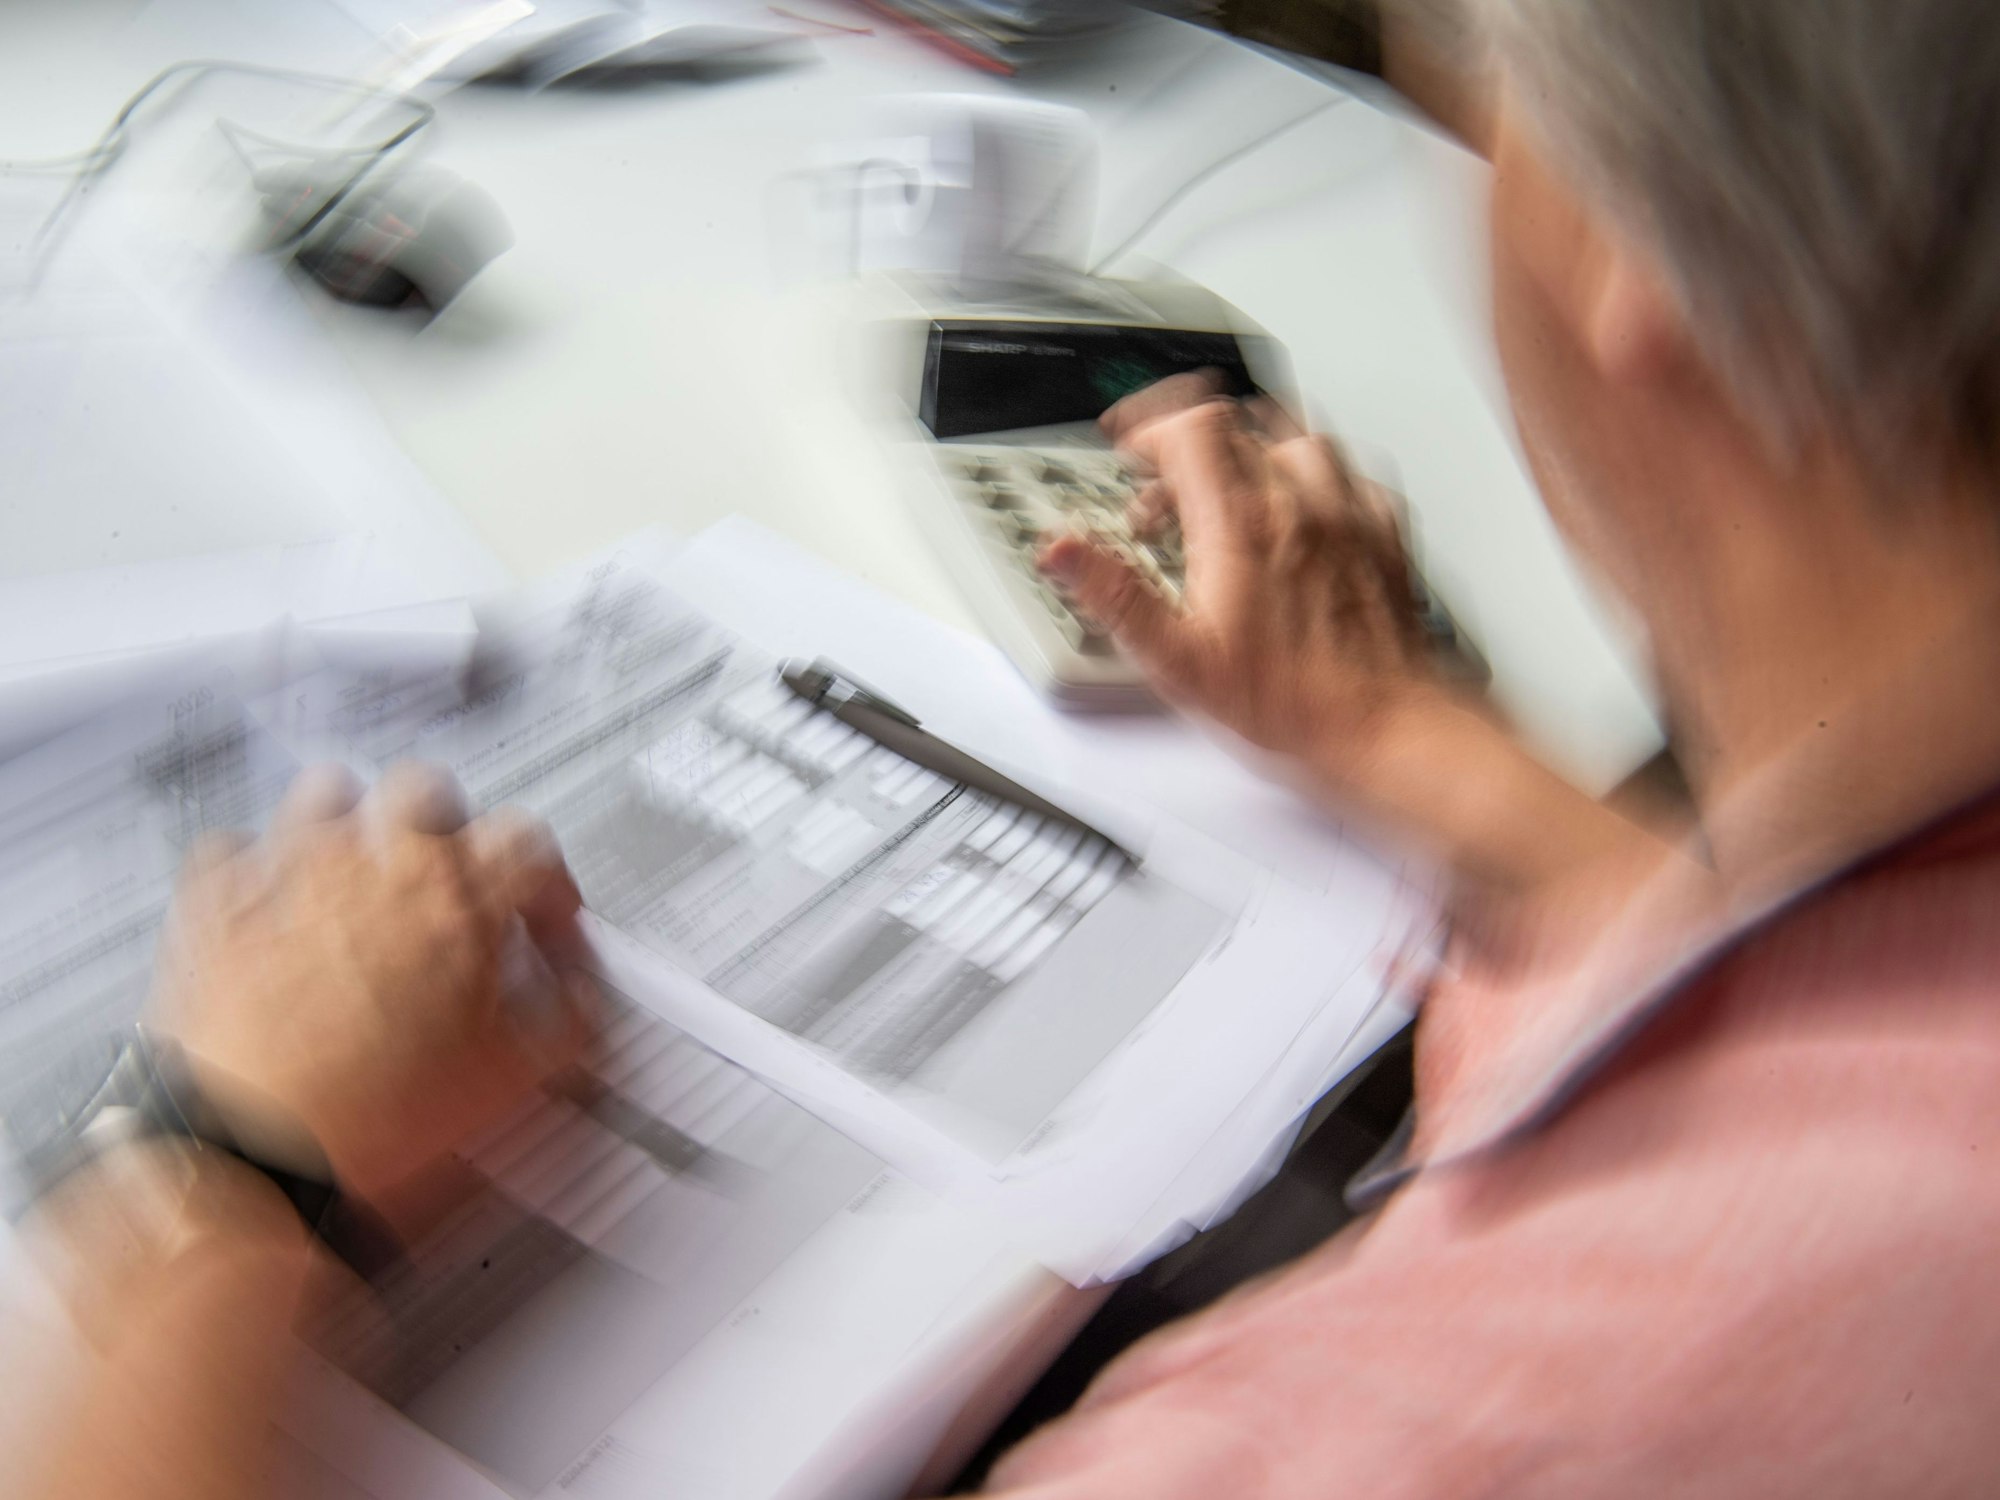 Ein Rentner füllt seine Steuererklärung aus und tippt zur Berechnung Zahlen in einen Tischrechner.